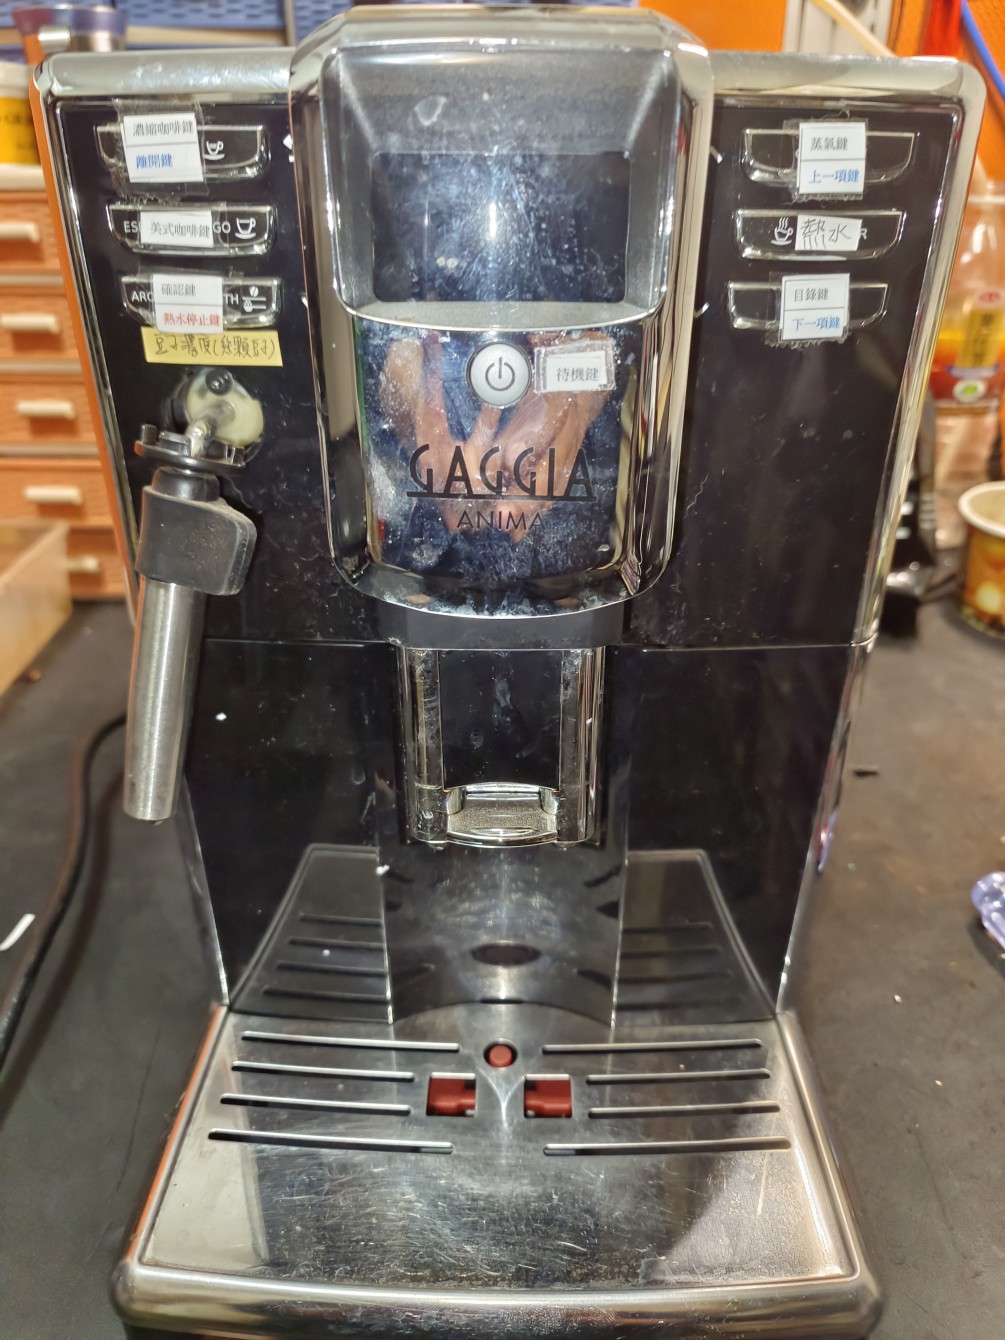 gaggla -9811-全自動咖啡機-開機無法出水維修保養